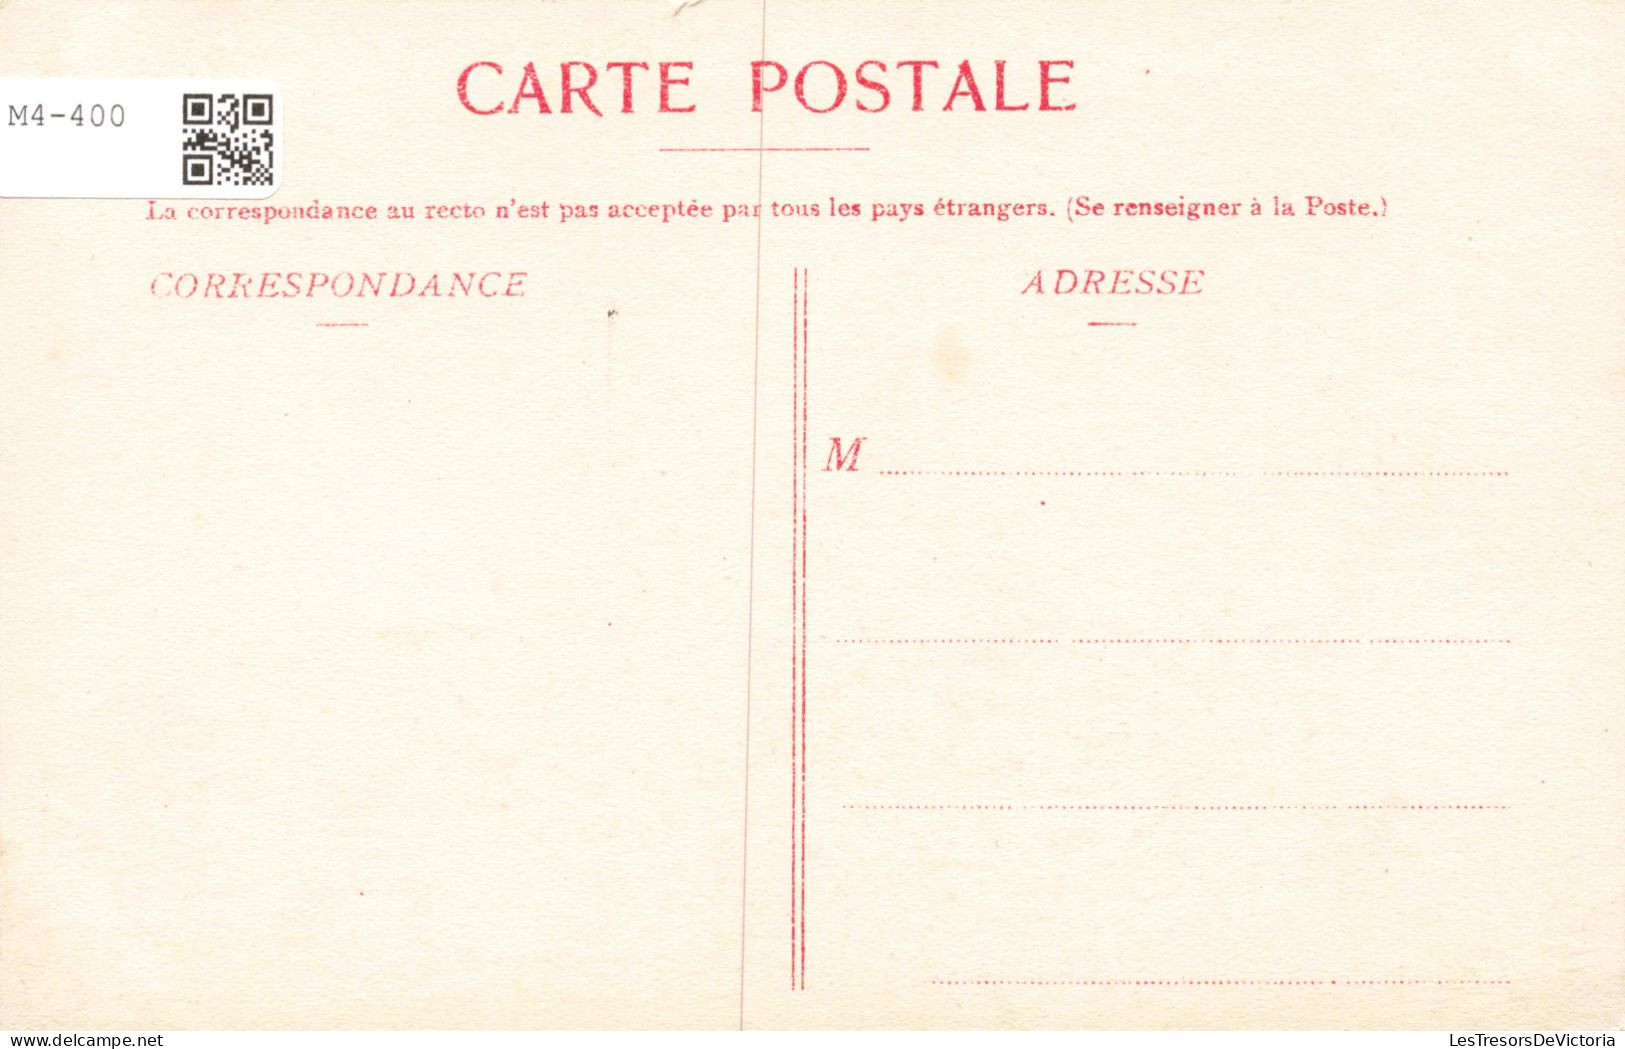 BELGIQUE - Ostende - Intérieur De L'Eglise SS Pierre & Paul - Carte Postale Ancienne - Oostende